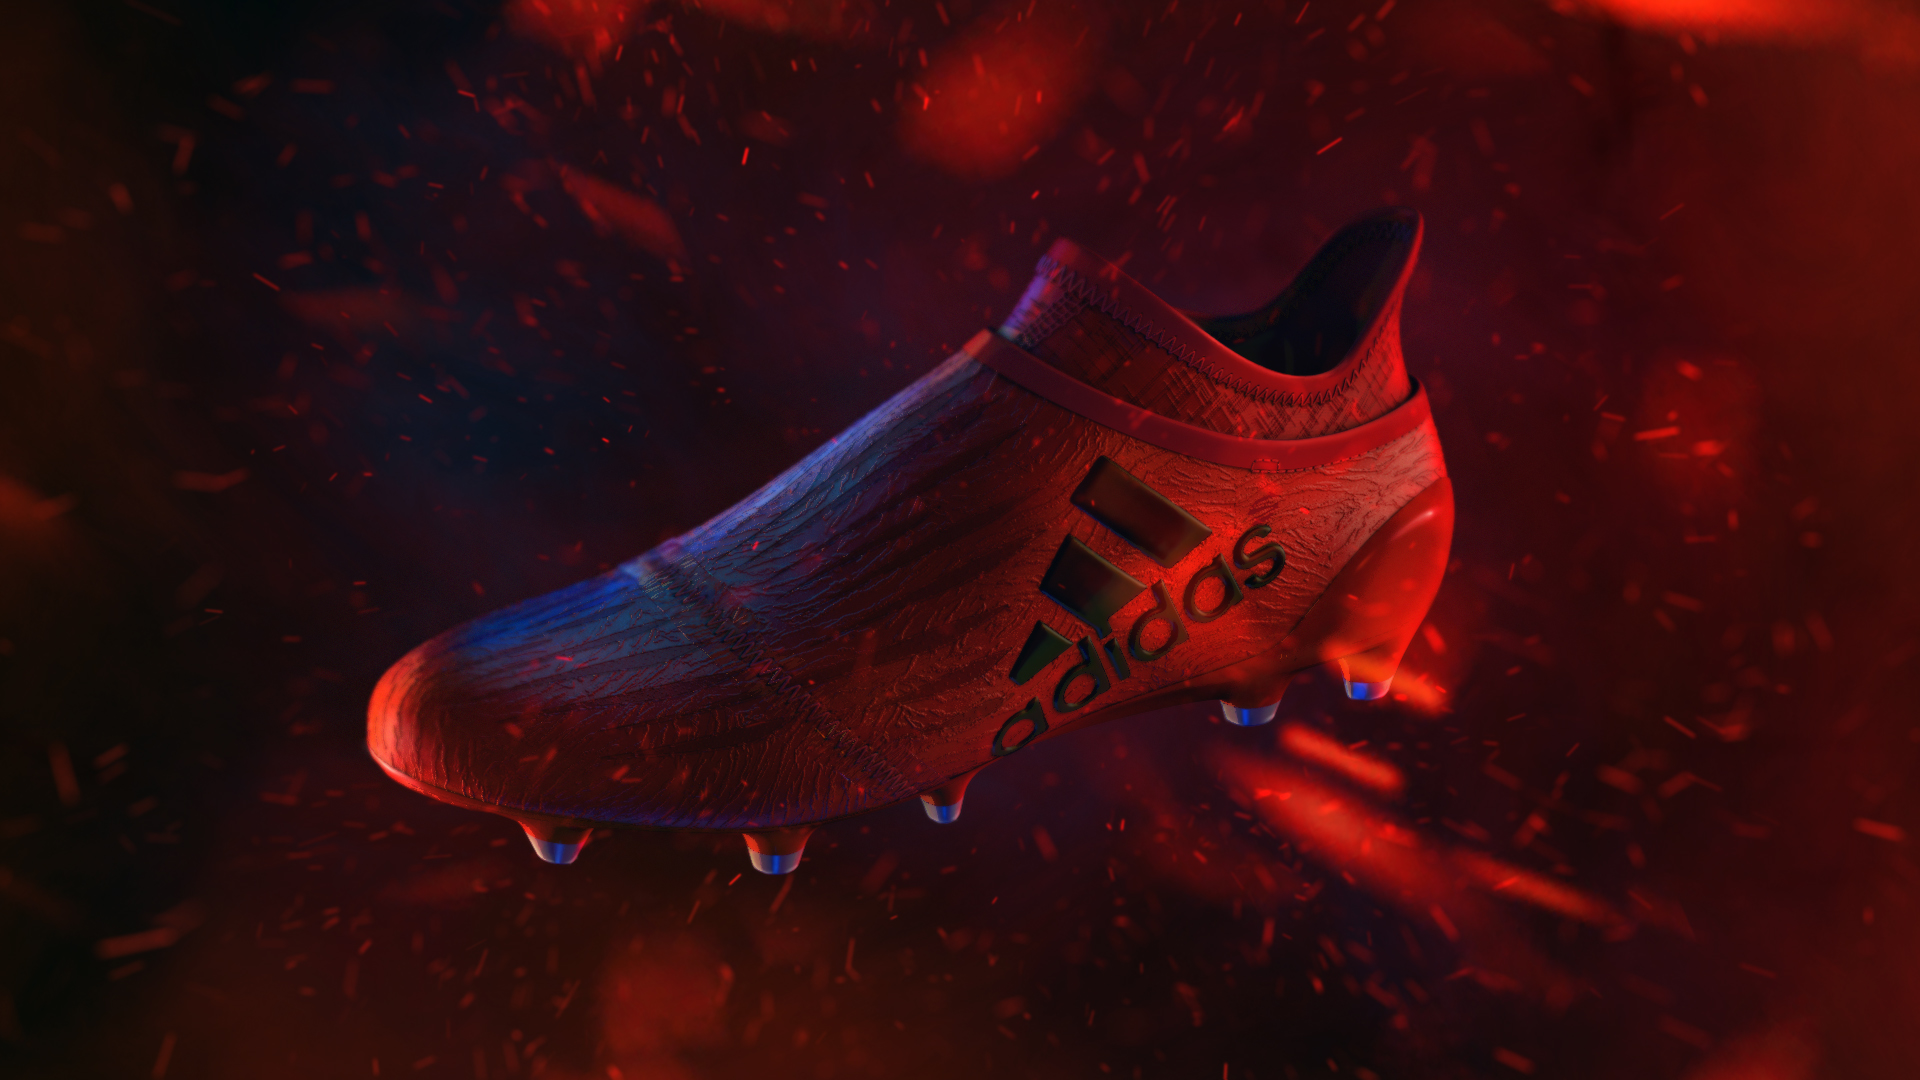 Adidas – Speed of Light